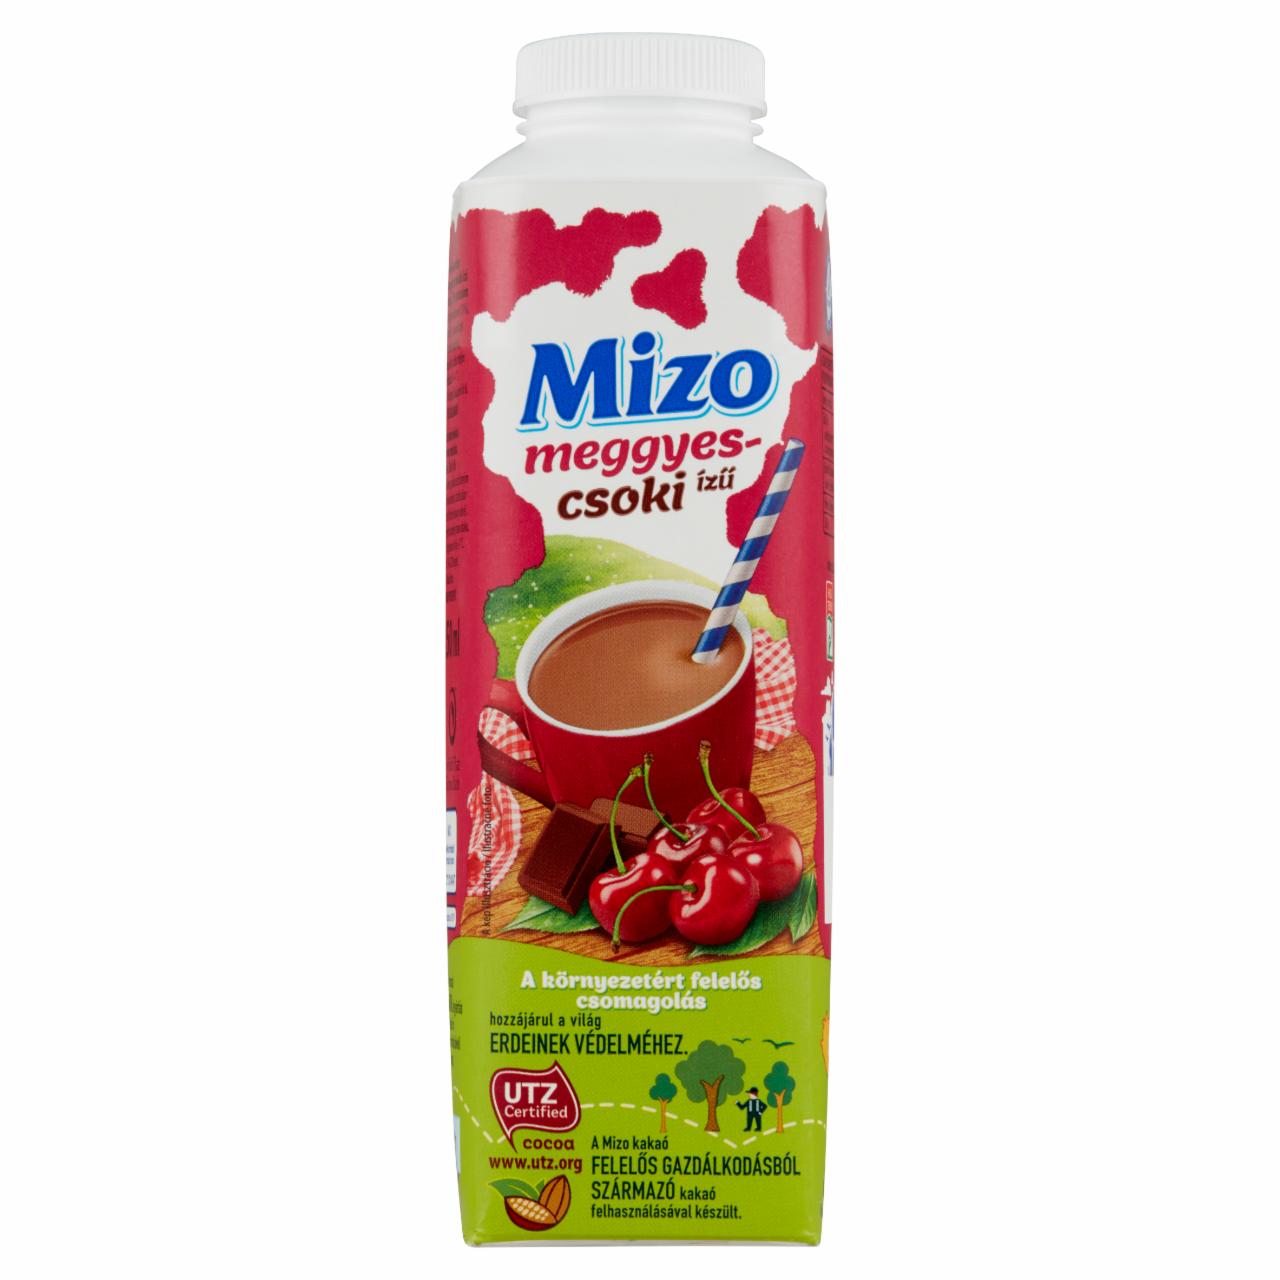 Képek - Mizo meggyes-csokoládé ízű félzsíros kakaós tejkészítmény 450 ml